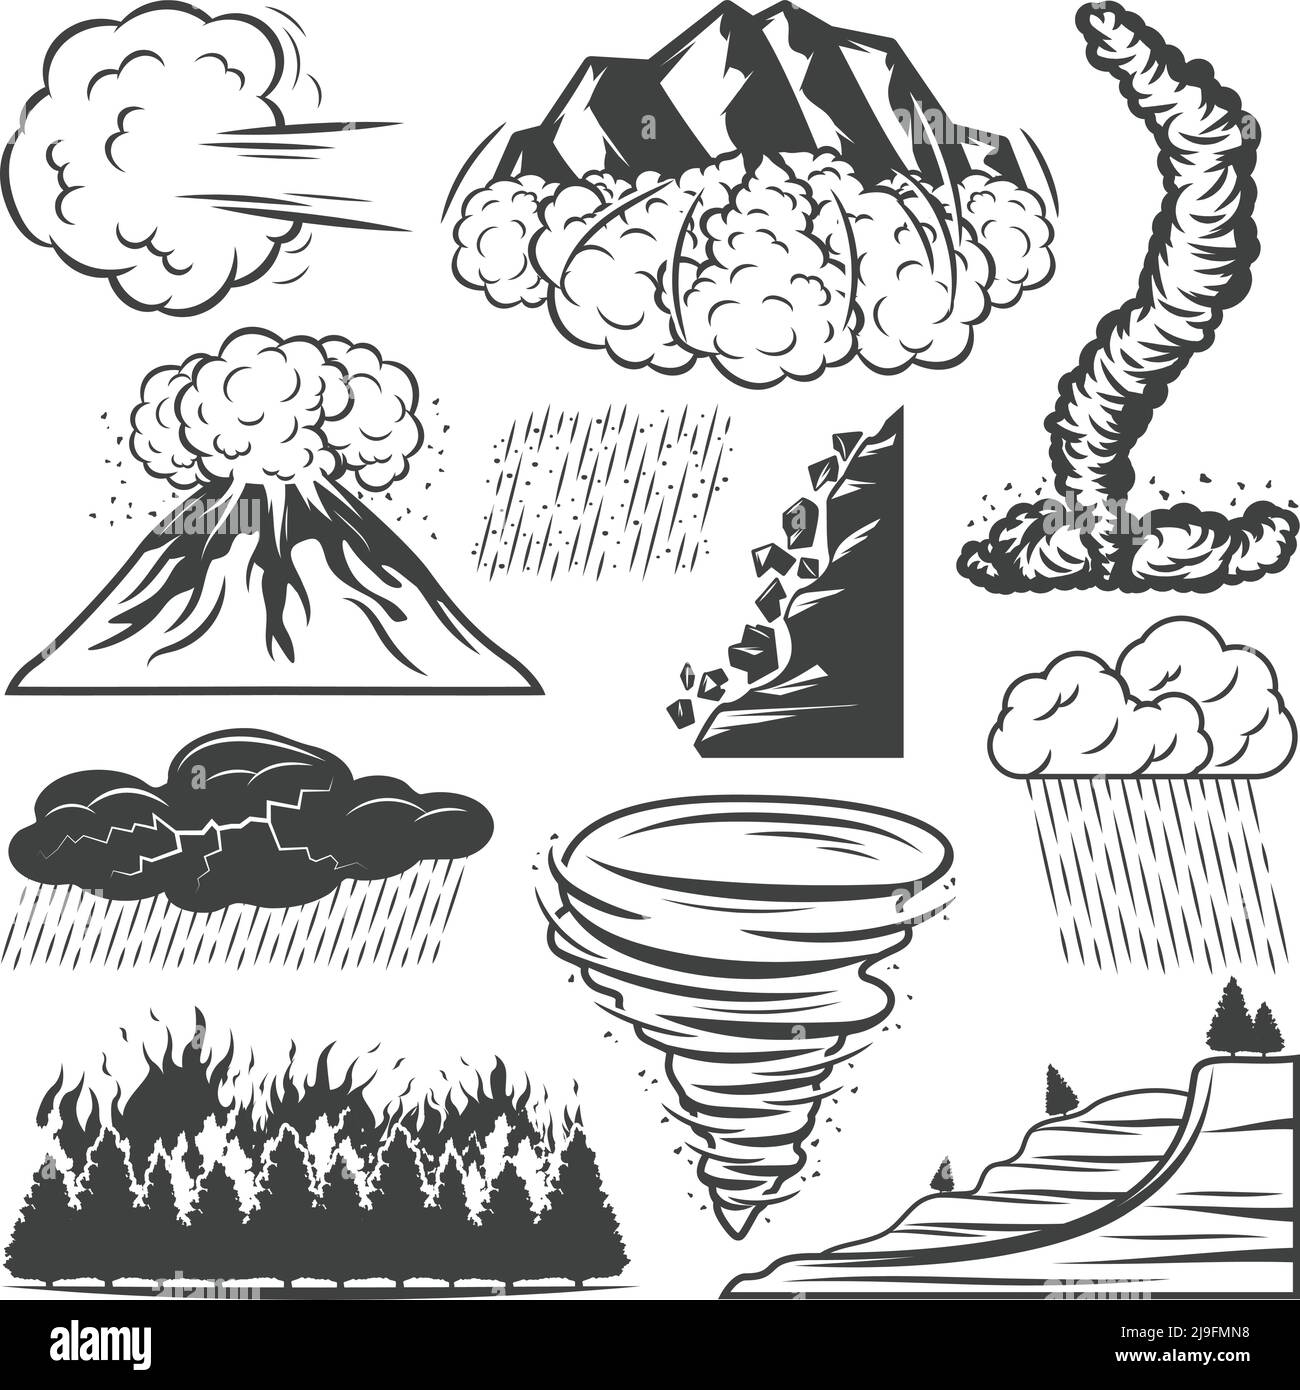 Collezione di disastri naturali d'epoca con eruzione del vulcano tornado pioggia tempesta hail thunderstorm frana avalanche wildfire isolato vettore illus Illustrazione Vettoriale